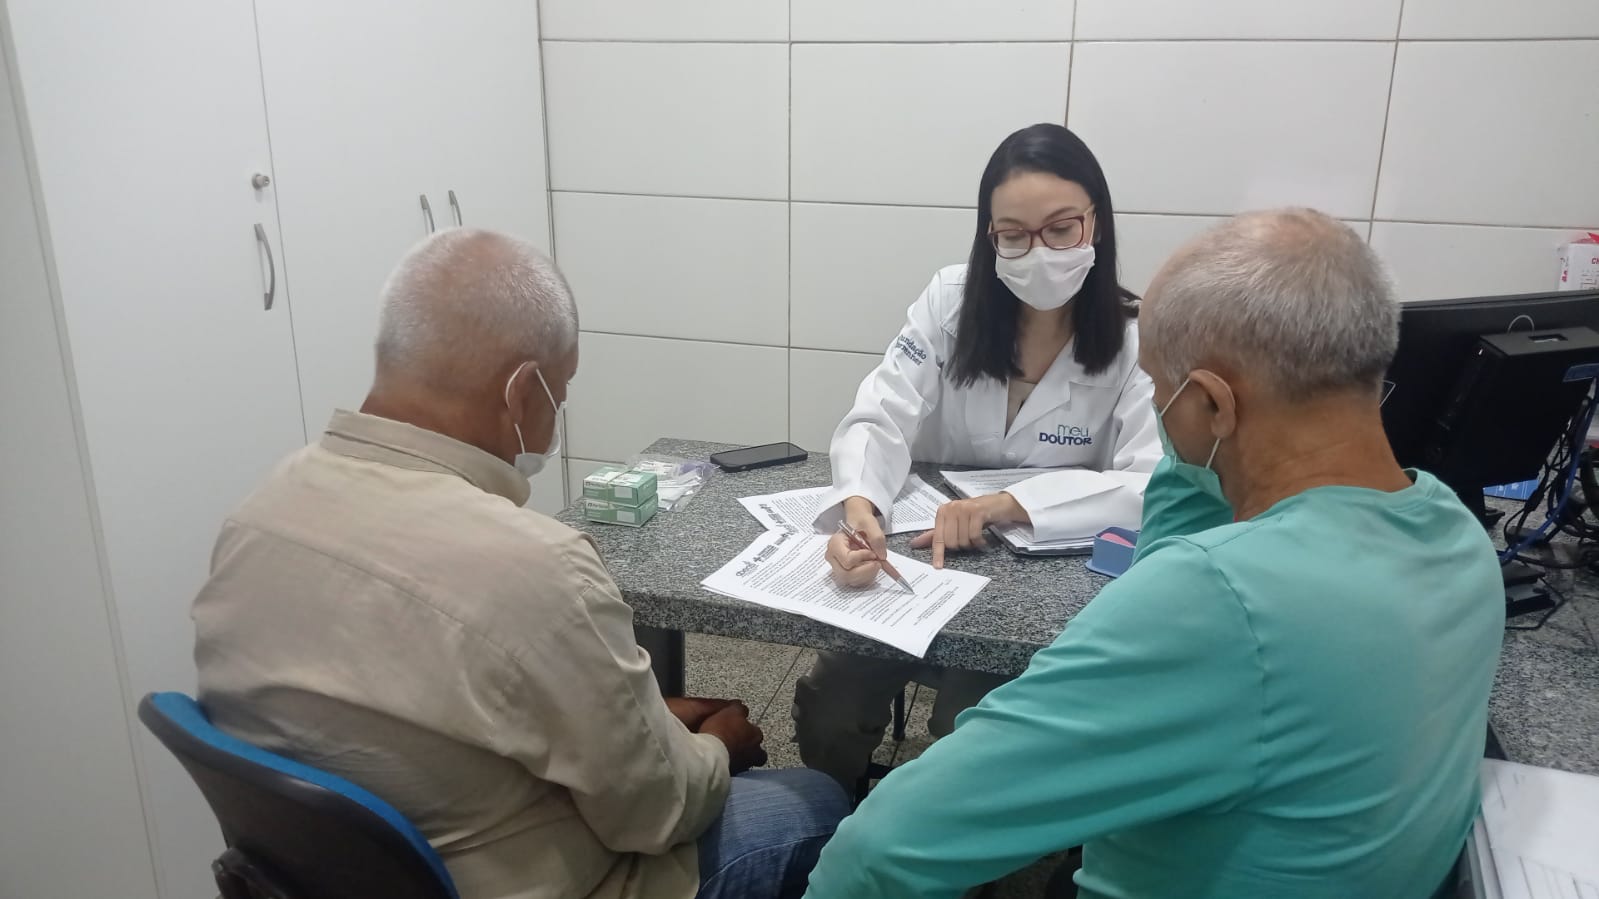 Pesquisa em Oncologia – Centro do Maranhão já atua em três estudos clínicos